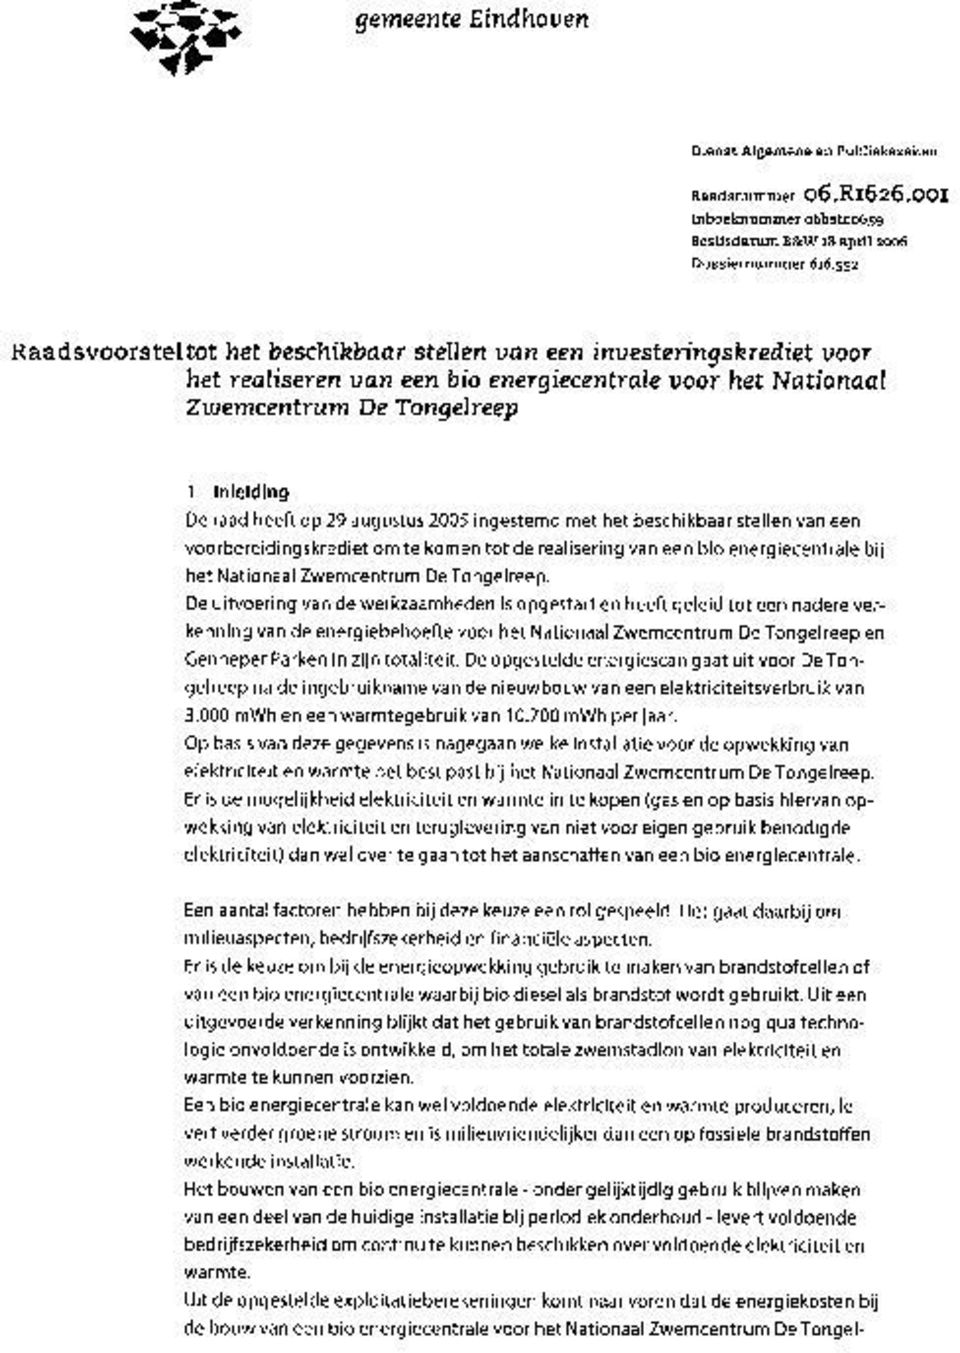 augustus 2005 ingestemd met het beschikbaar stellen van een voorbereidingskrediet om te komen tot de realisering van een bio energiecentrale bij het Nationaal Zwemcentrum De Tongelreep.